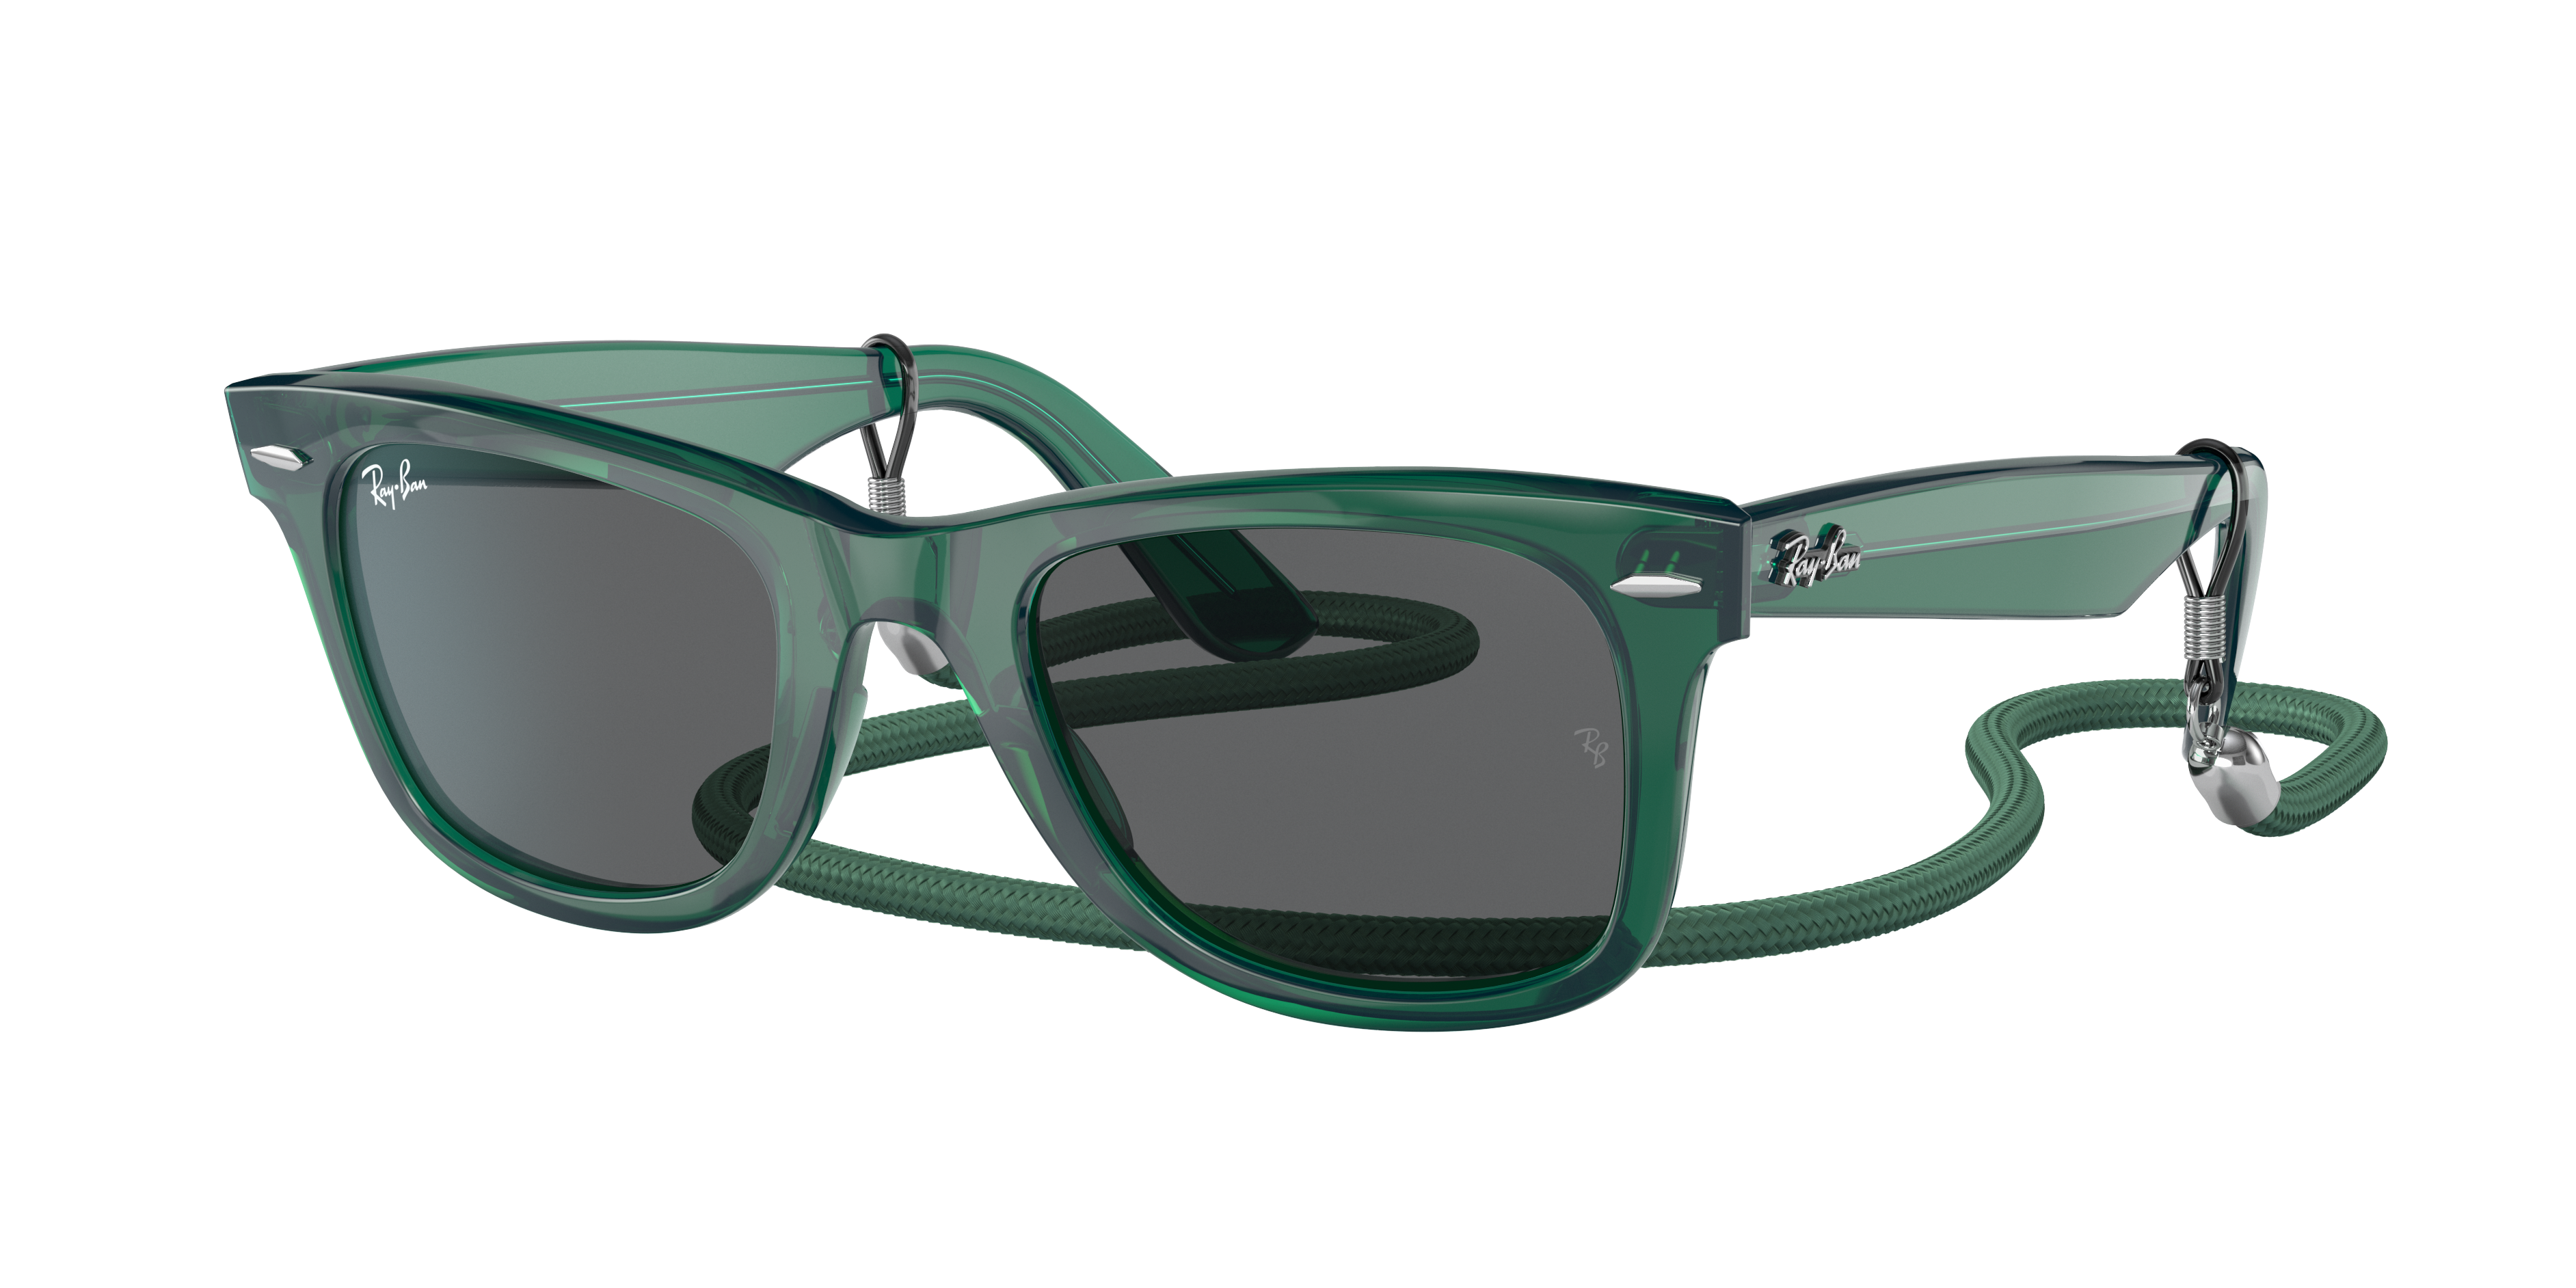 Hilsen At håndtere Et centralt værktøj, der spiller en vigtig rolle Original Wayfarer Colorblock Sunglasses in Transparent Green and Dark Grey  | Ray-Ban®